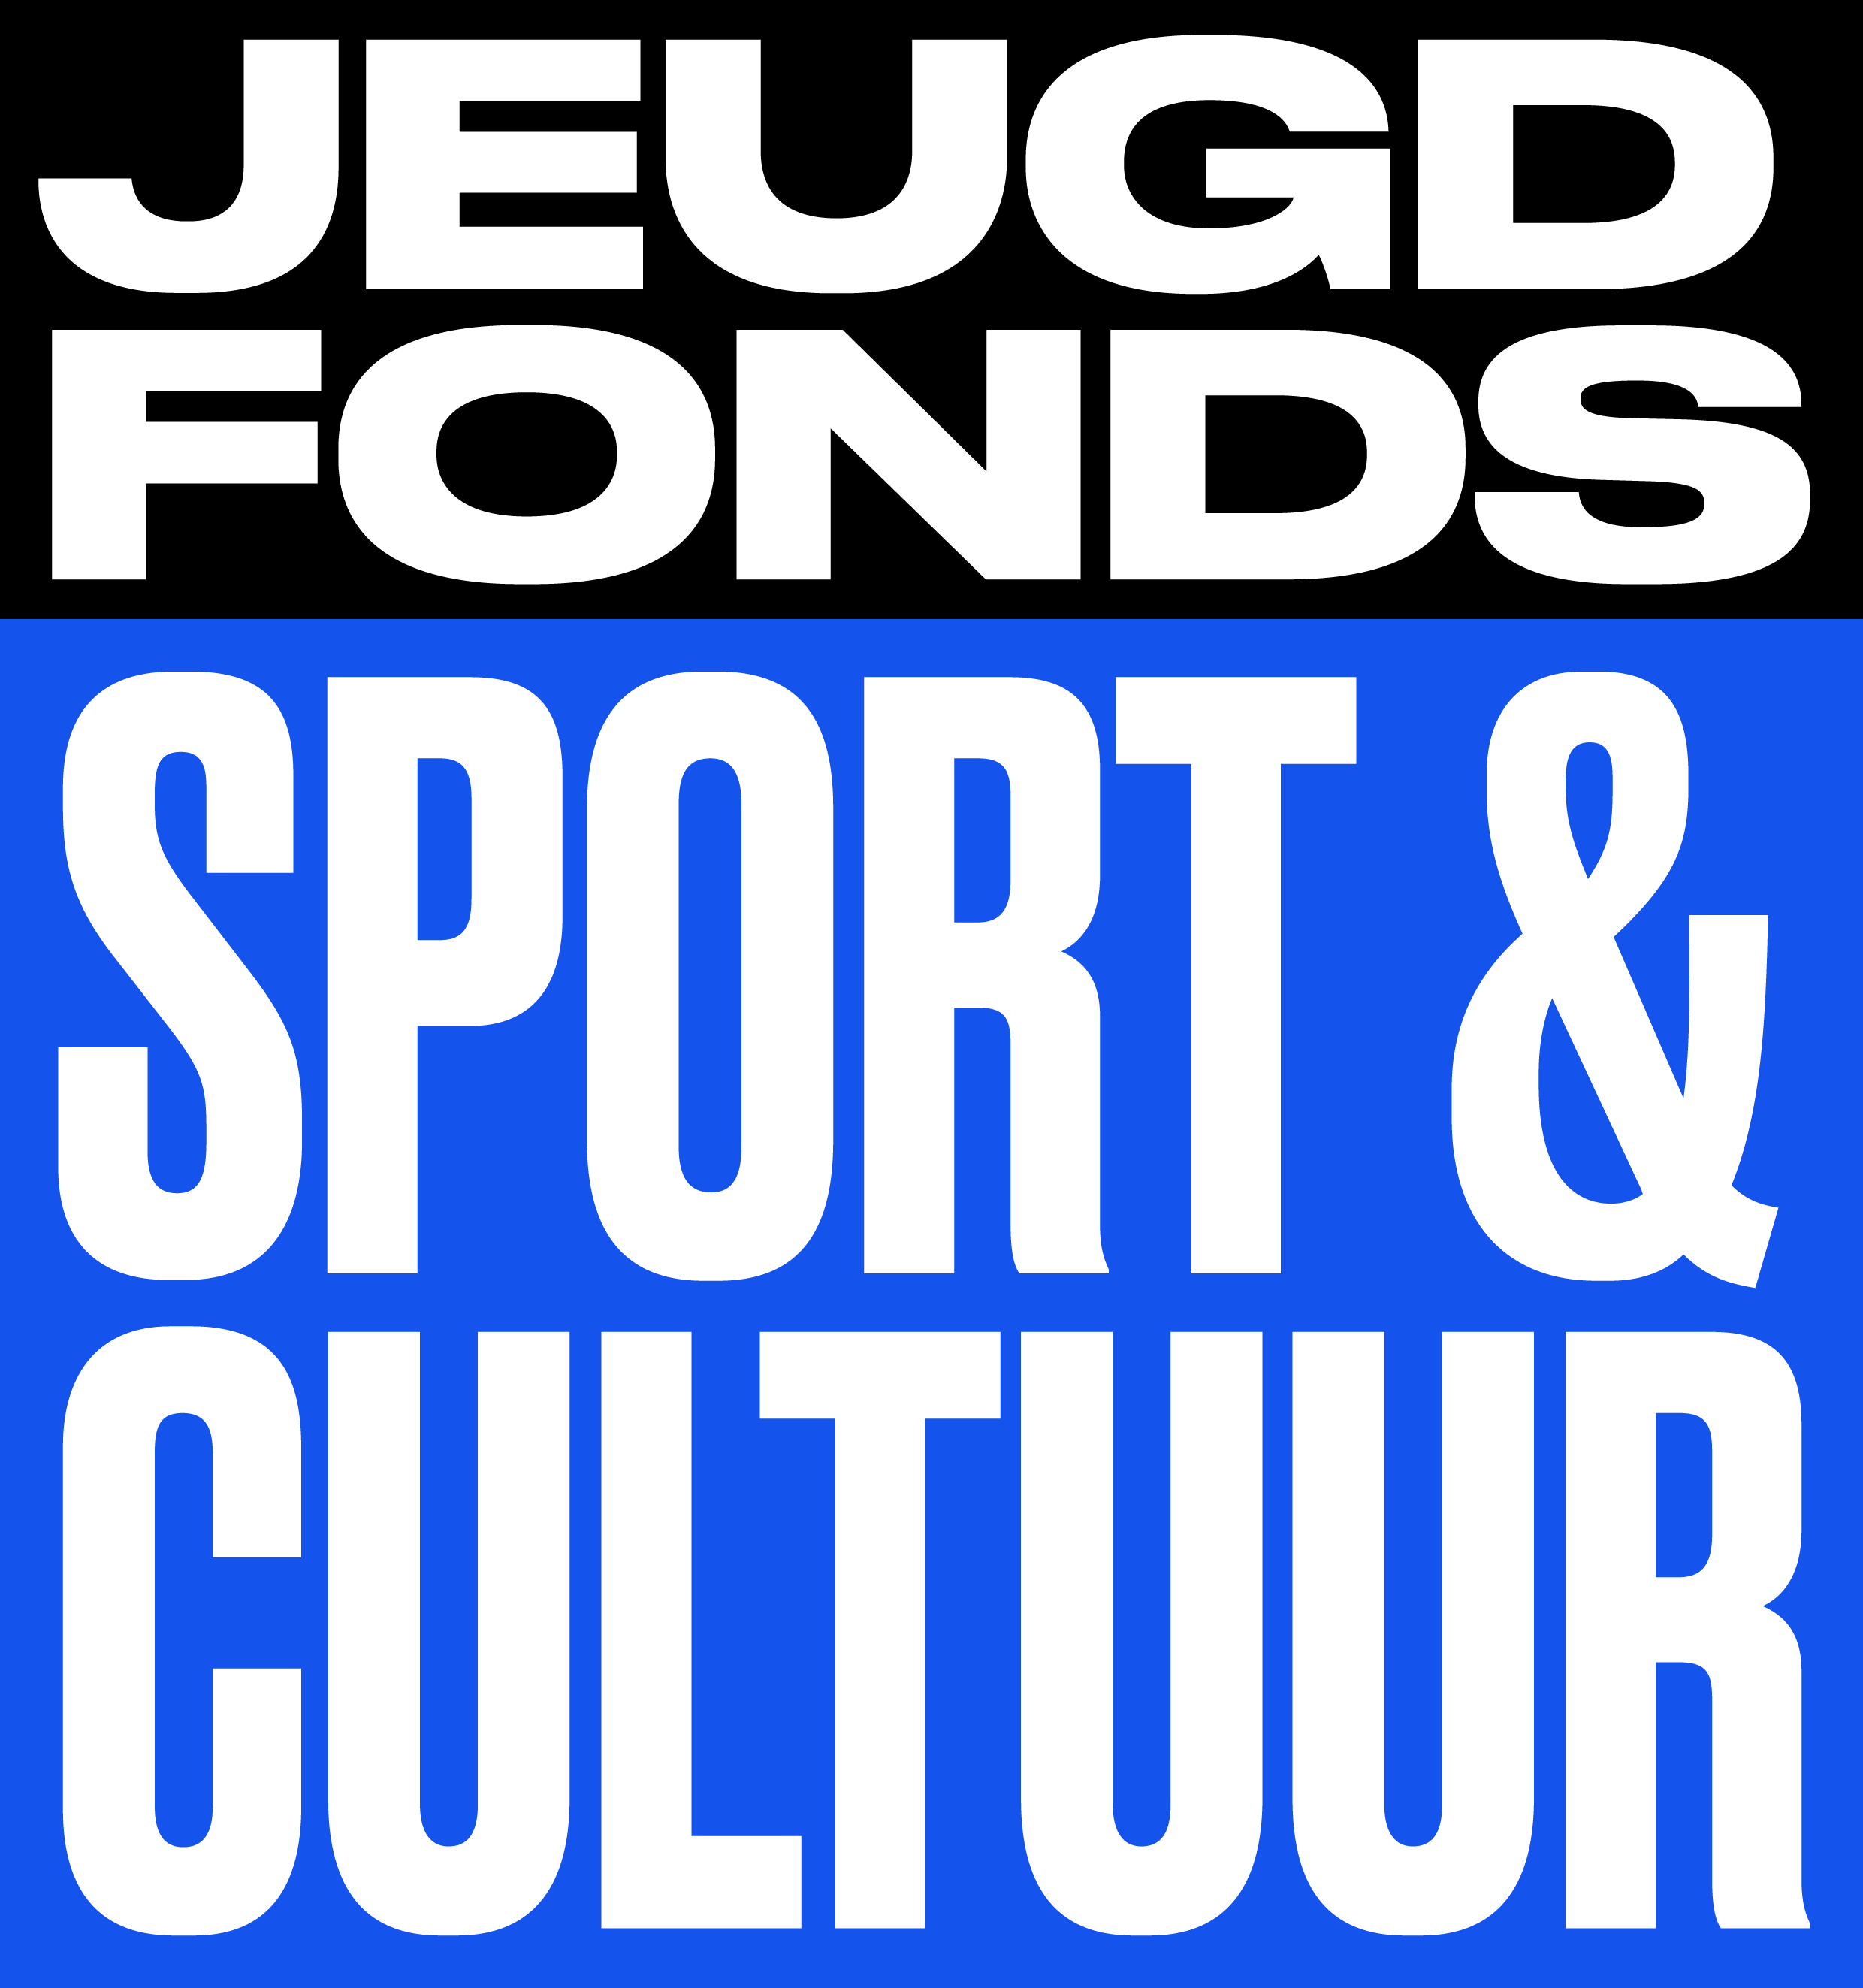 Een nieuwe naam en huisstijl! | Jeugdfonds Sport & Cultuur